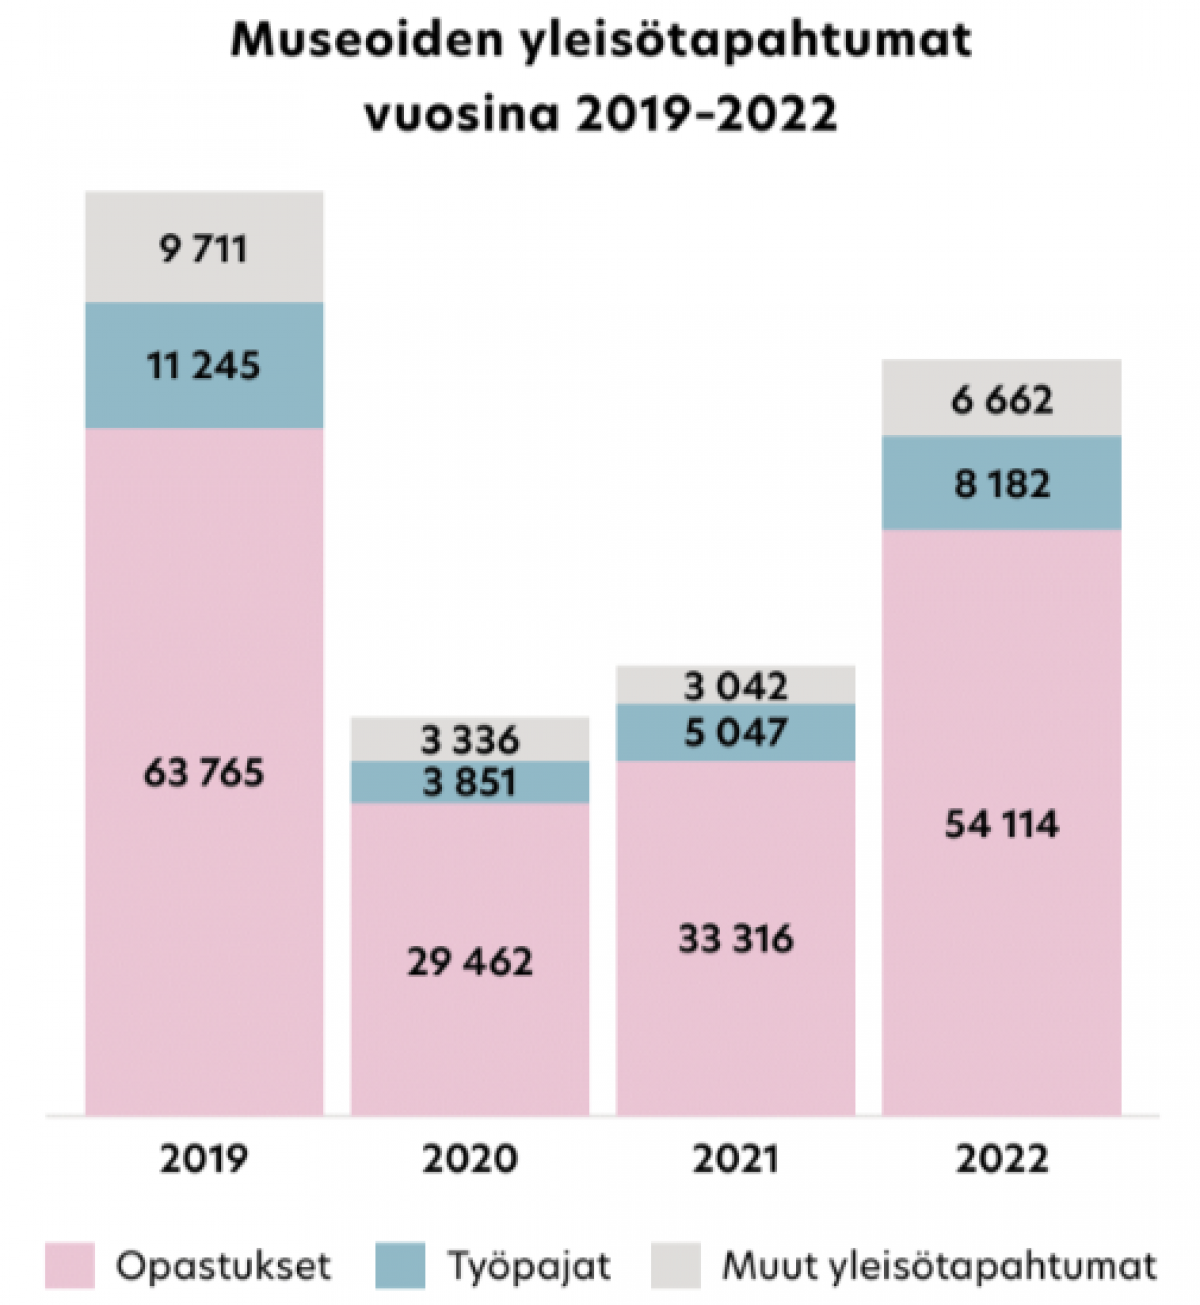 Graafi museoiden yleisötapahtumista 2019-2022. Suurin palkki on vuonna 2019. Vuosien 2020 ja 2021 määrät ovat puolet vuoden 2019 määristä. Vuoden 2022 palkki on lähes yhtä korkea kuin vuonna 2019.